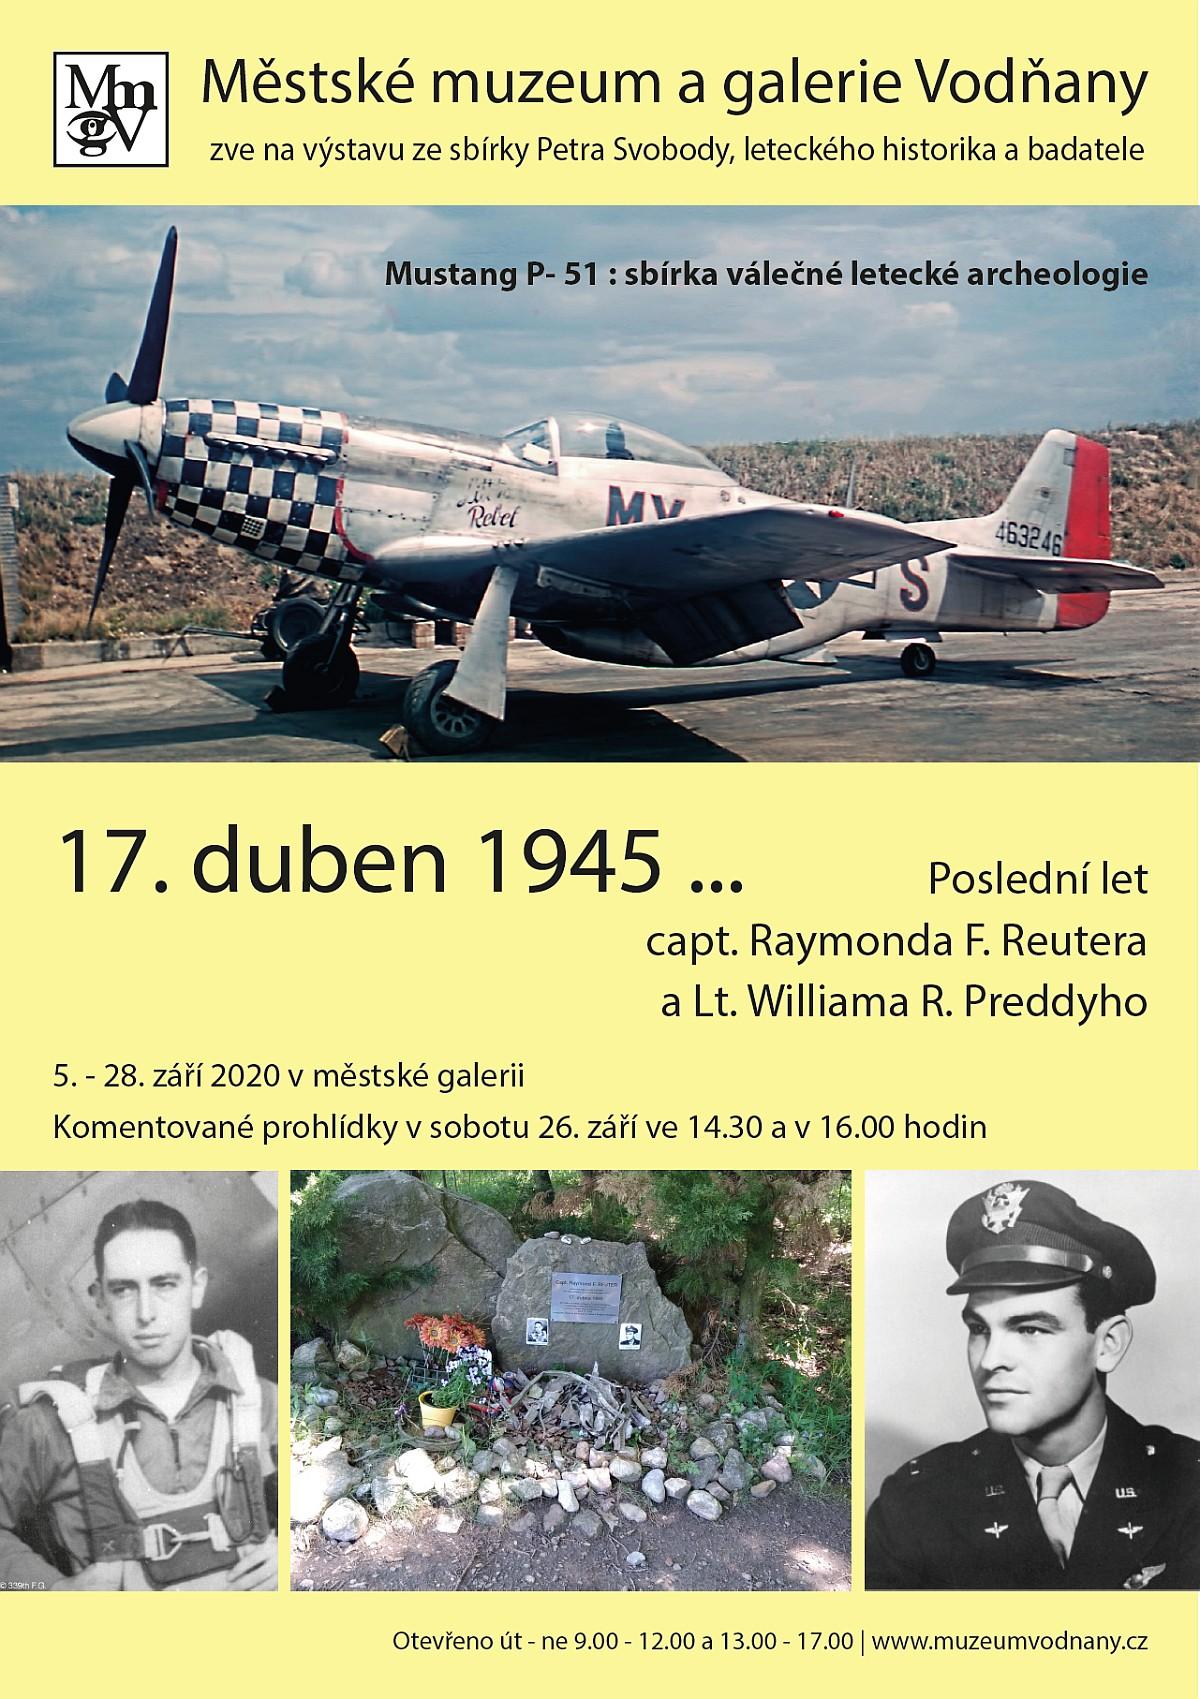 Plakát - 17. duben 1945 ... poslední let capt. Raymonda F. Reutera a Lt. Williama R. Preddyho